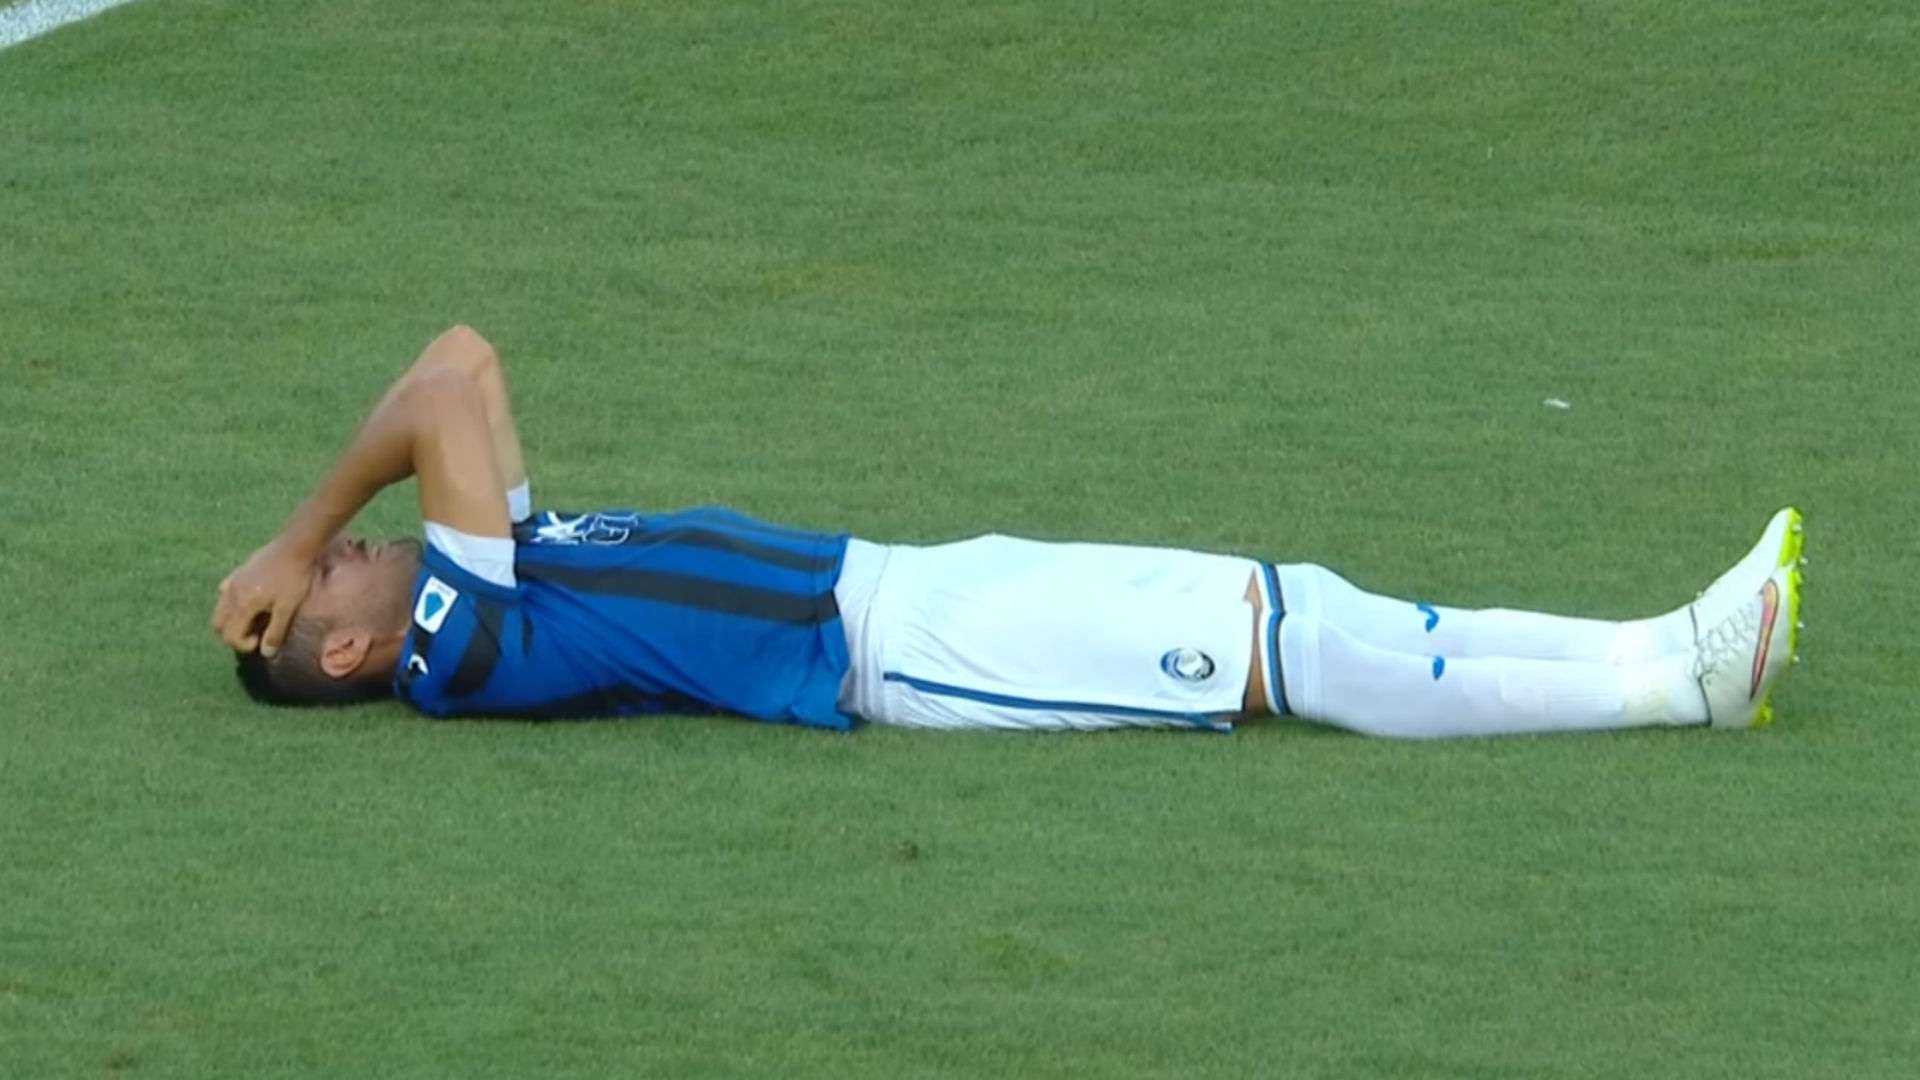 Palomino injured Parma Atalanta